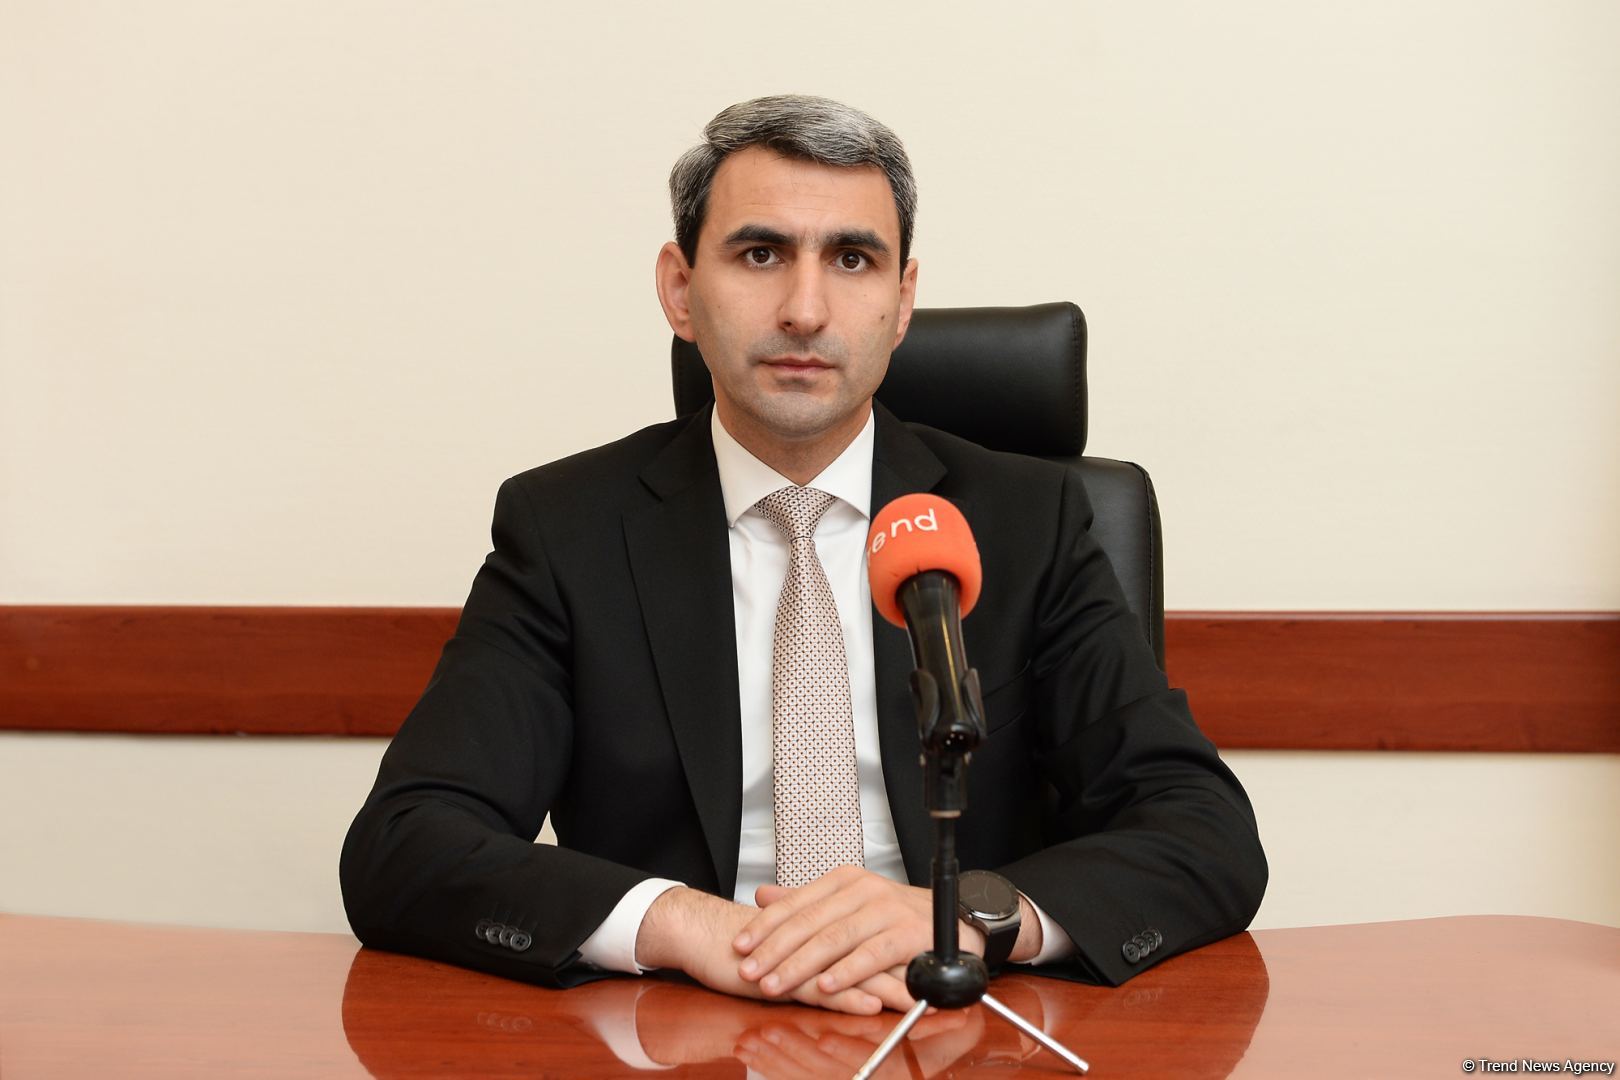 Агентство информационно-коммуникационных технологий ускорит цифровую трансформацию в Азербайджане - замминистра (Интервью)